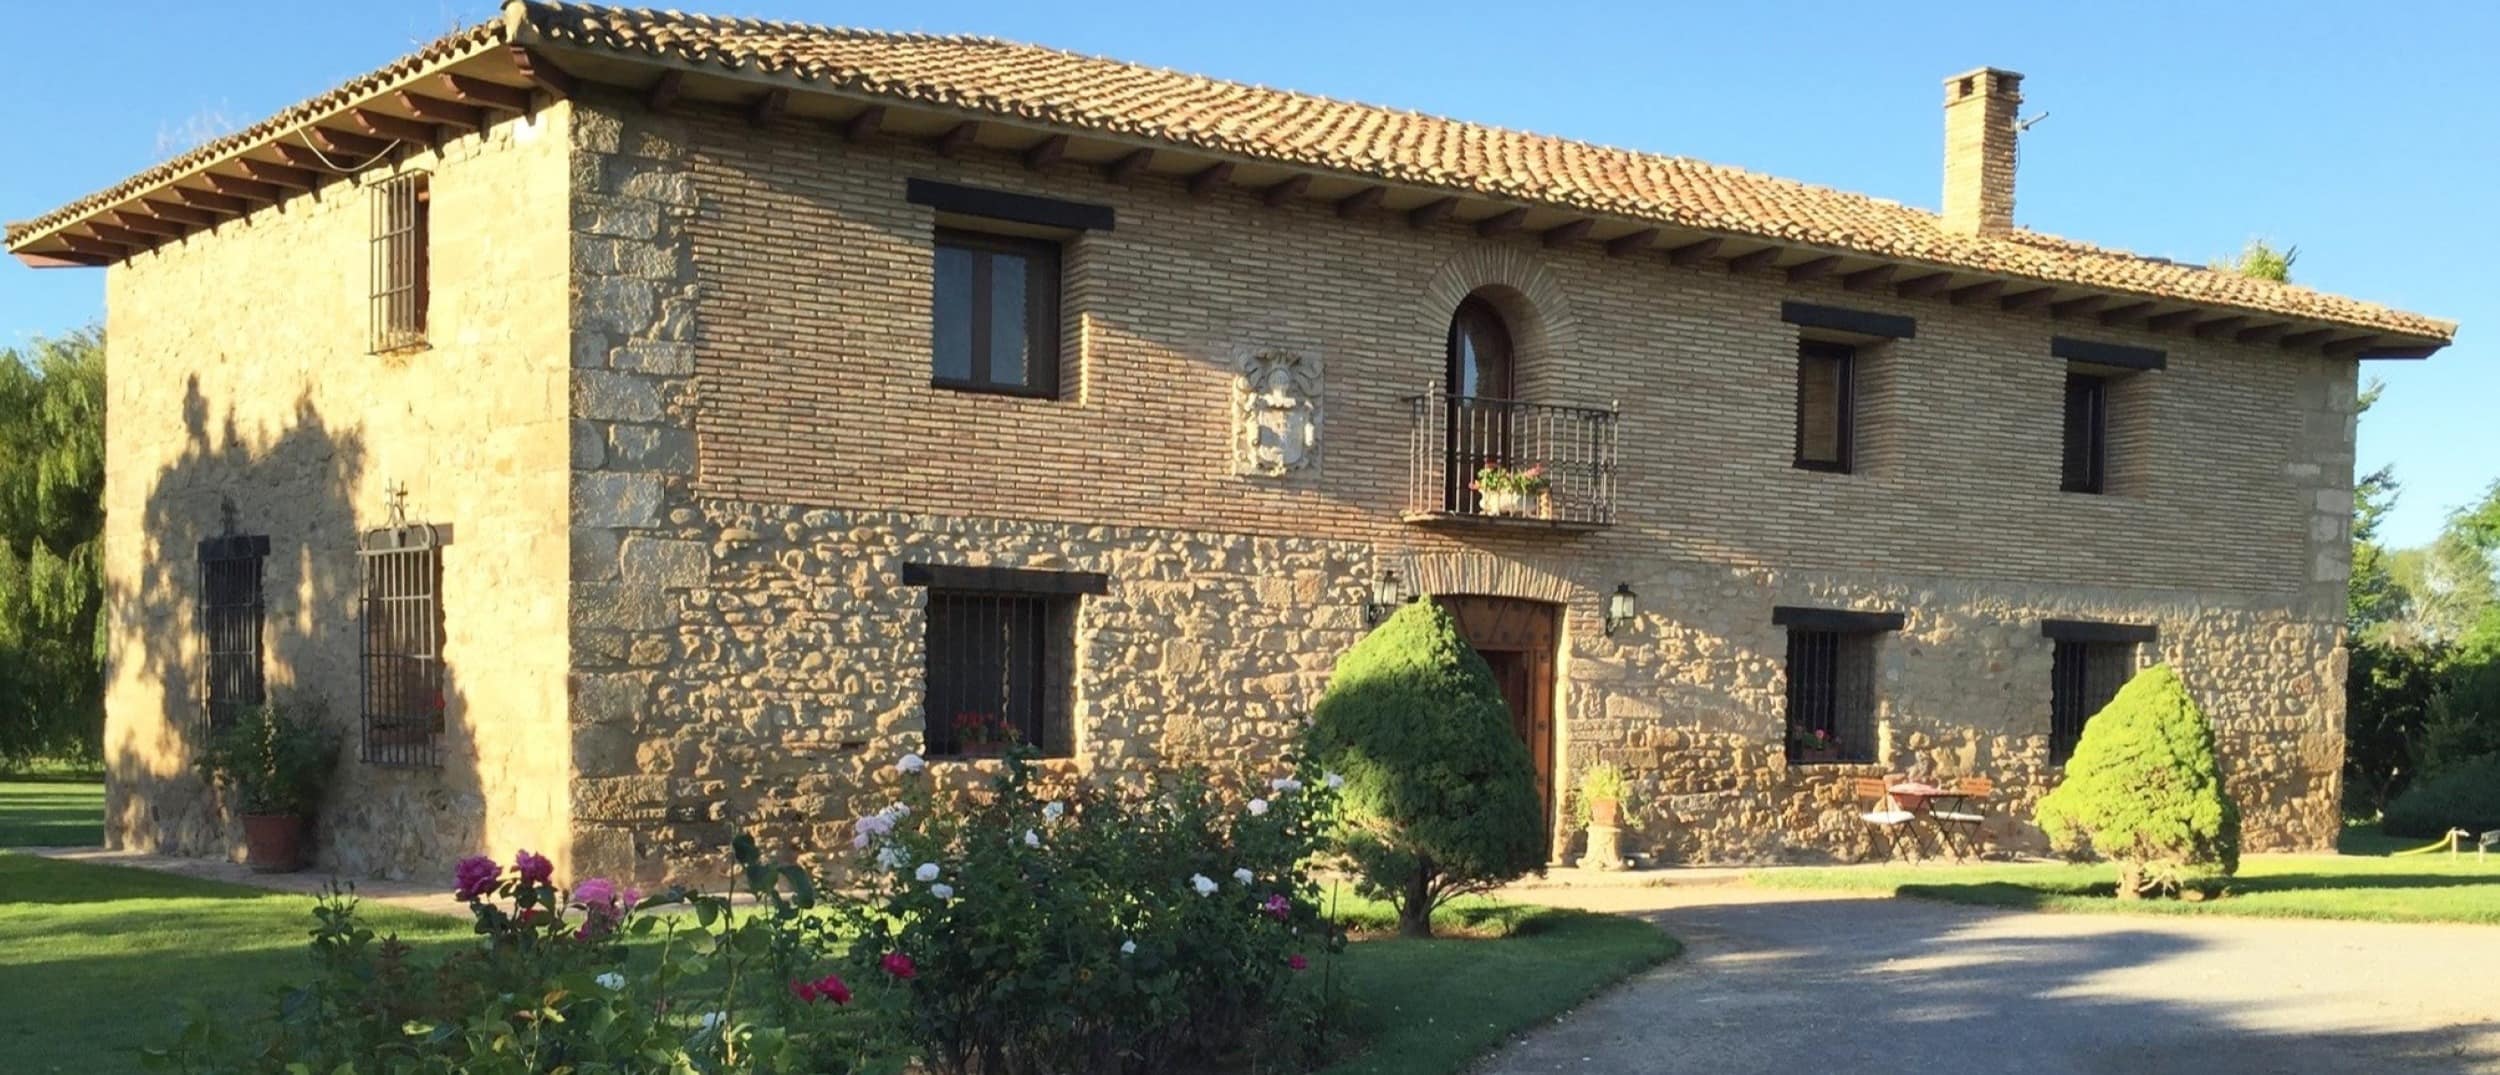 Alquila una casa rural en Zaragoza, una provincia única